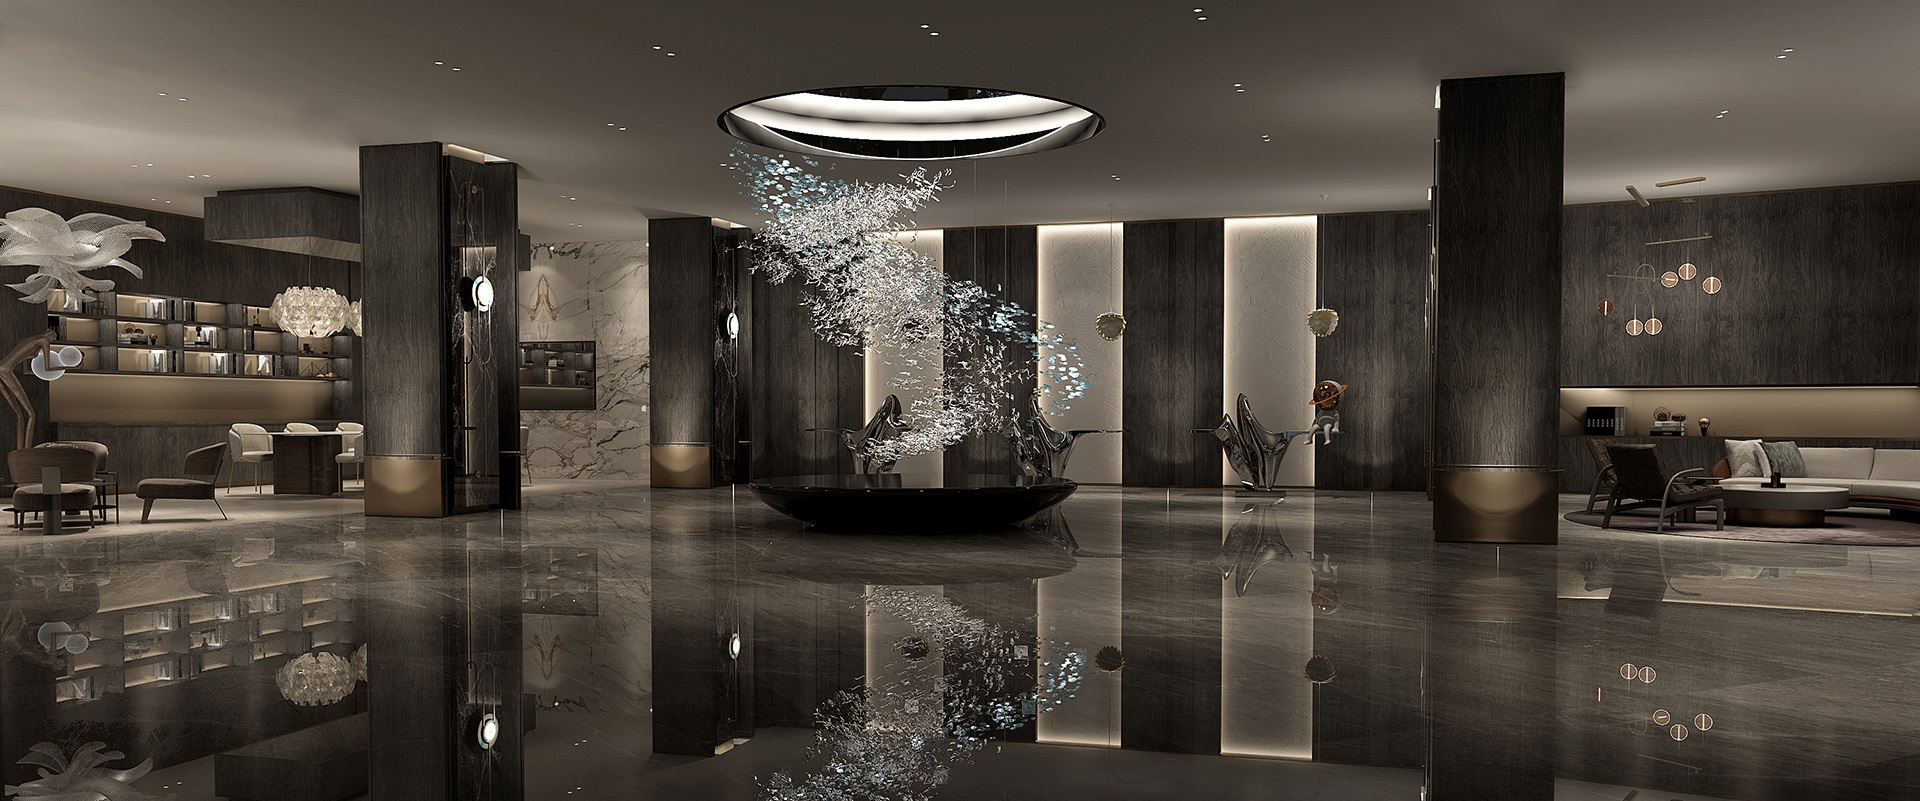 DUTTI LED Modern Chandelier Non-standard OEMCustom Pendant Ceiling Lighting Fixtures Crystal for dining living room Best Price